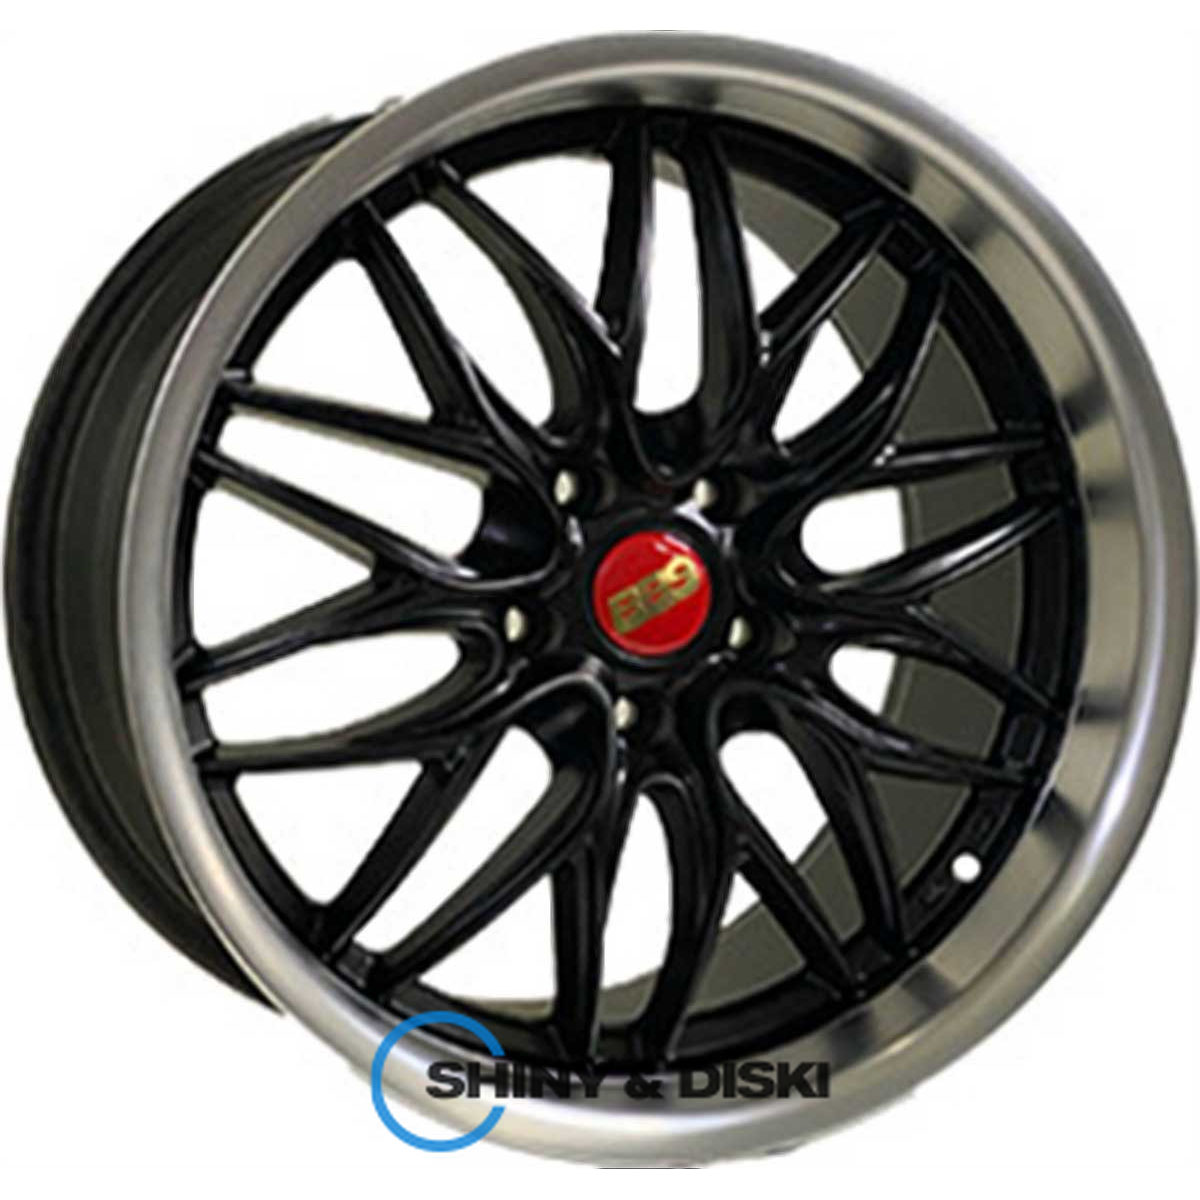 cast wheels cw004 matt black lip polish r18 w9 pcd5x114.3 et35 dia73.1